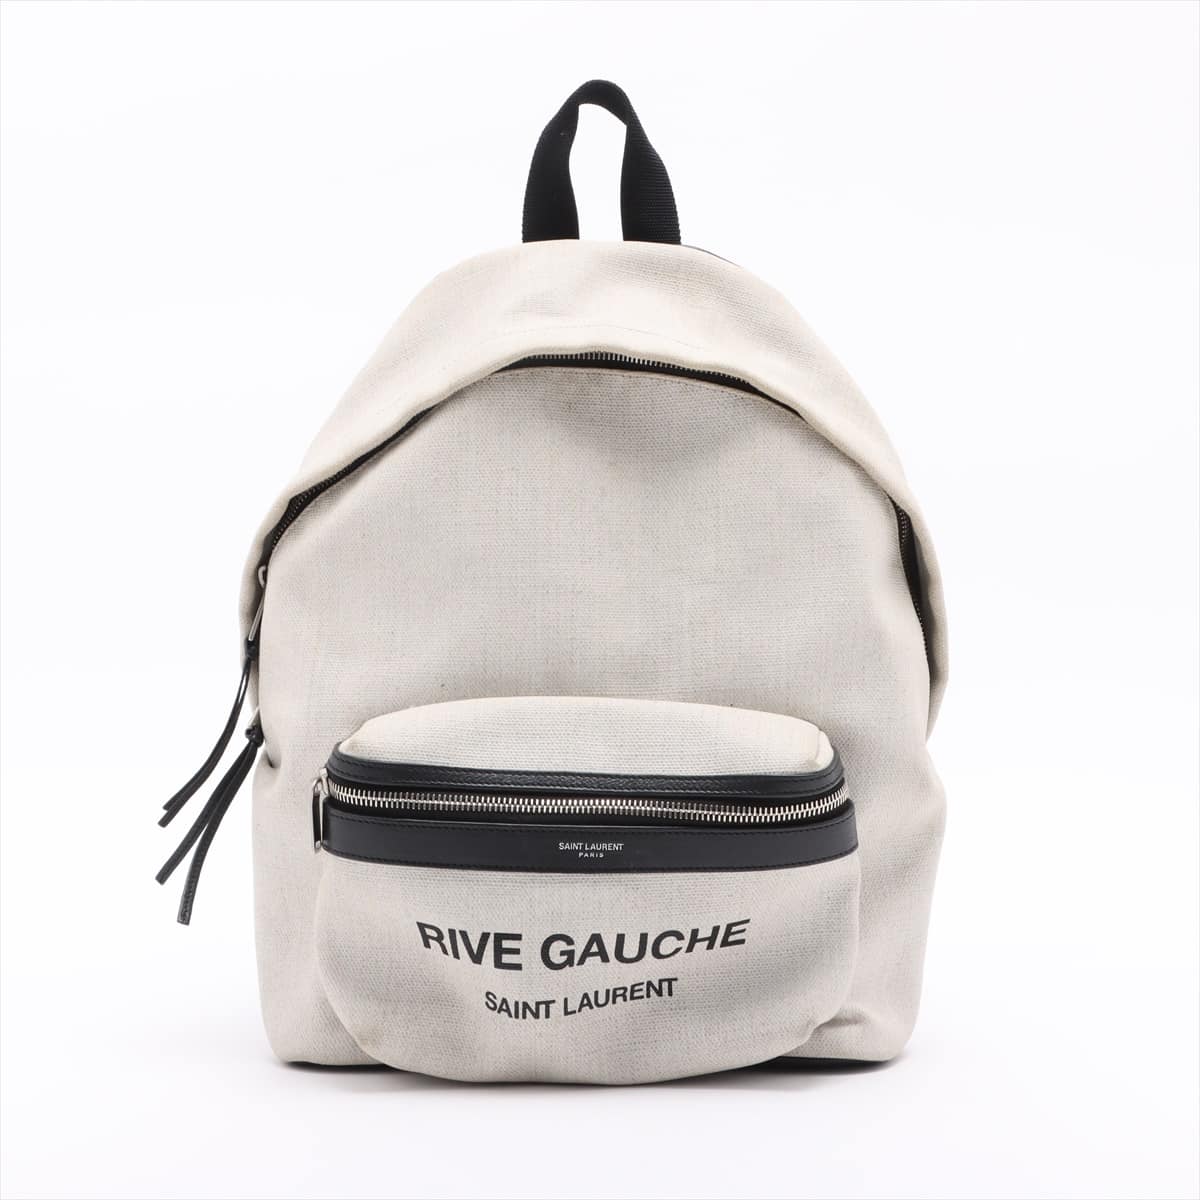 Saint Laurent Paris Rive Gauche Linen × Leather Backpack Beige 508548